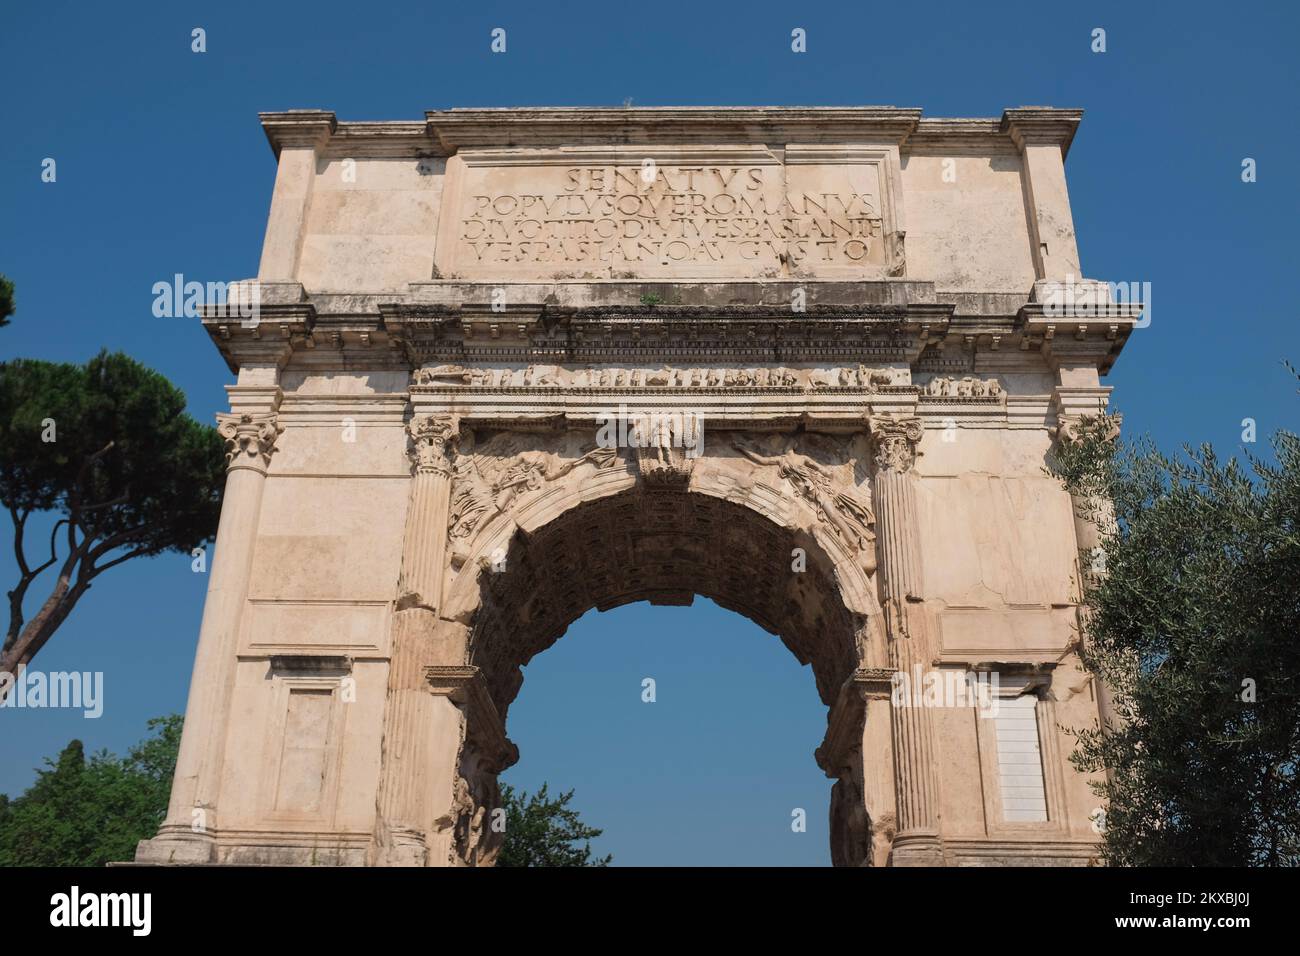 Roma, Italia - rovine dell'Arco di Tito lungo la Via Sacra nel Foro Romano. Antica struttura che celebra la caduta di Gerusalemme. Simbolo della diaspora ebraica. Foto Stock